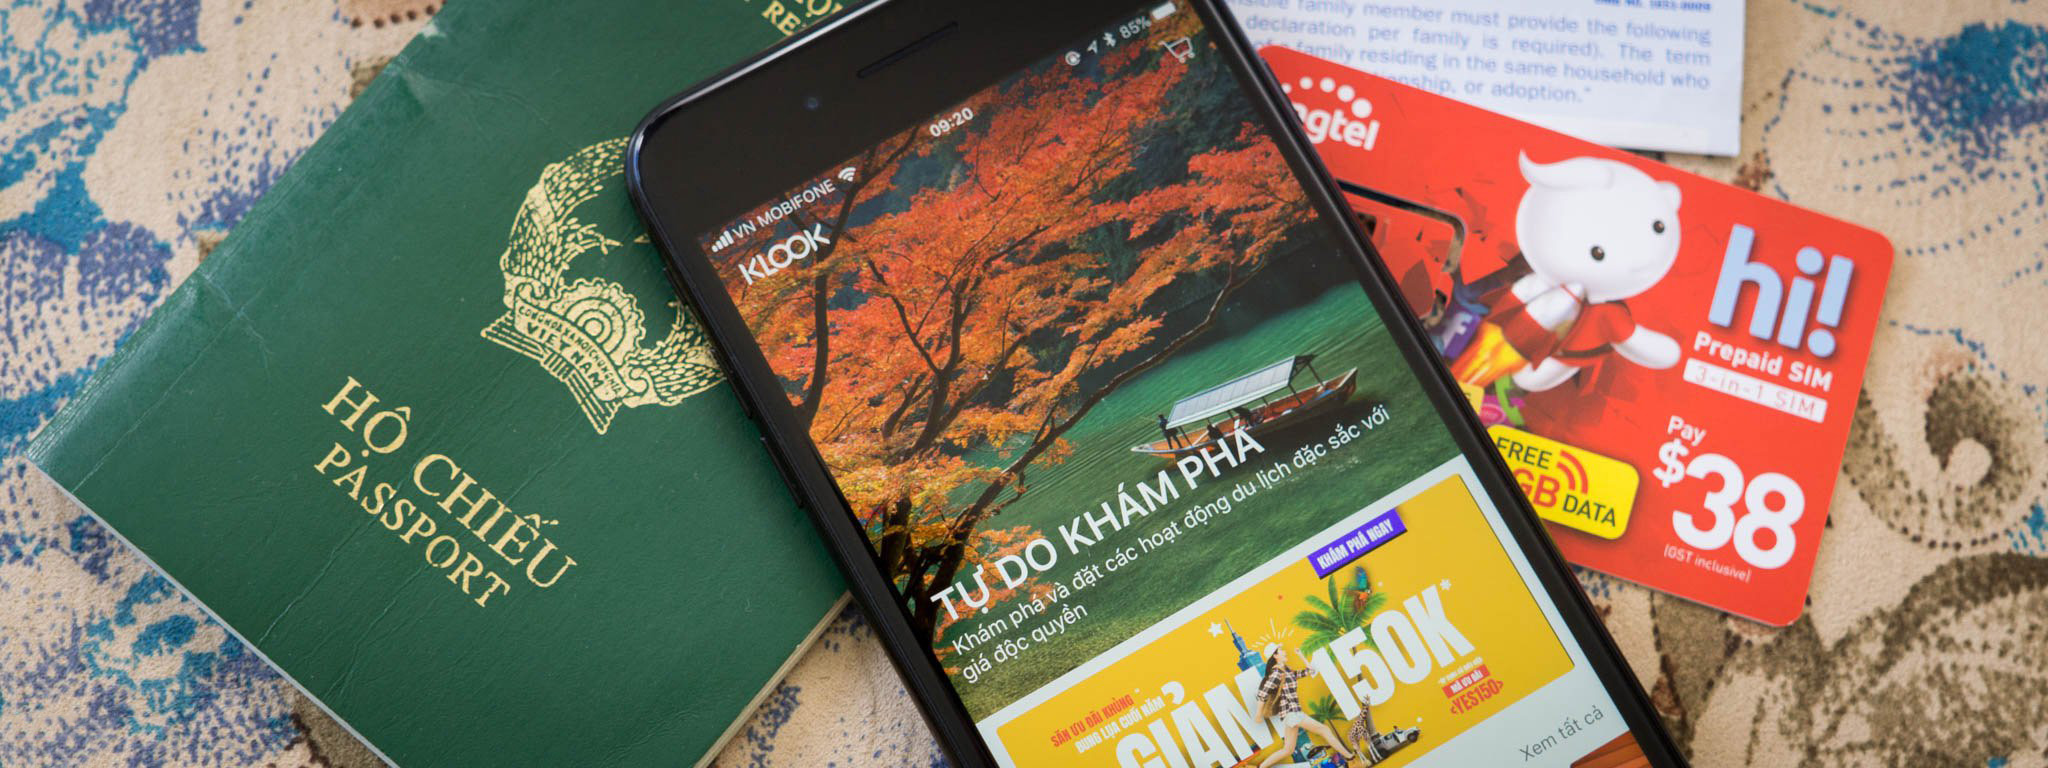 Các app để đi du lịch rẻ và vui hơn: mua sẵn SIM, Wi-Fi, đặt khách sạn giá rẻ, mua sẵn vé tham quan